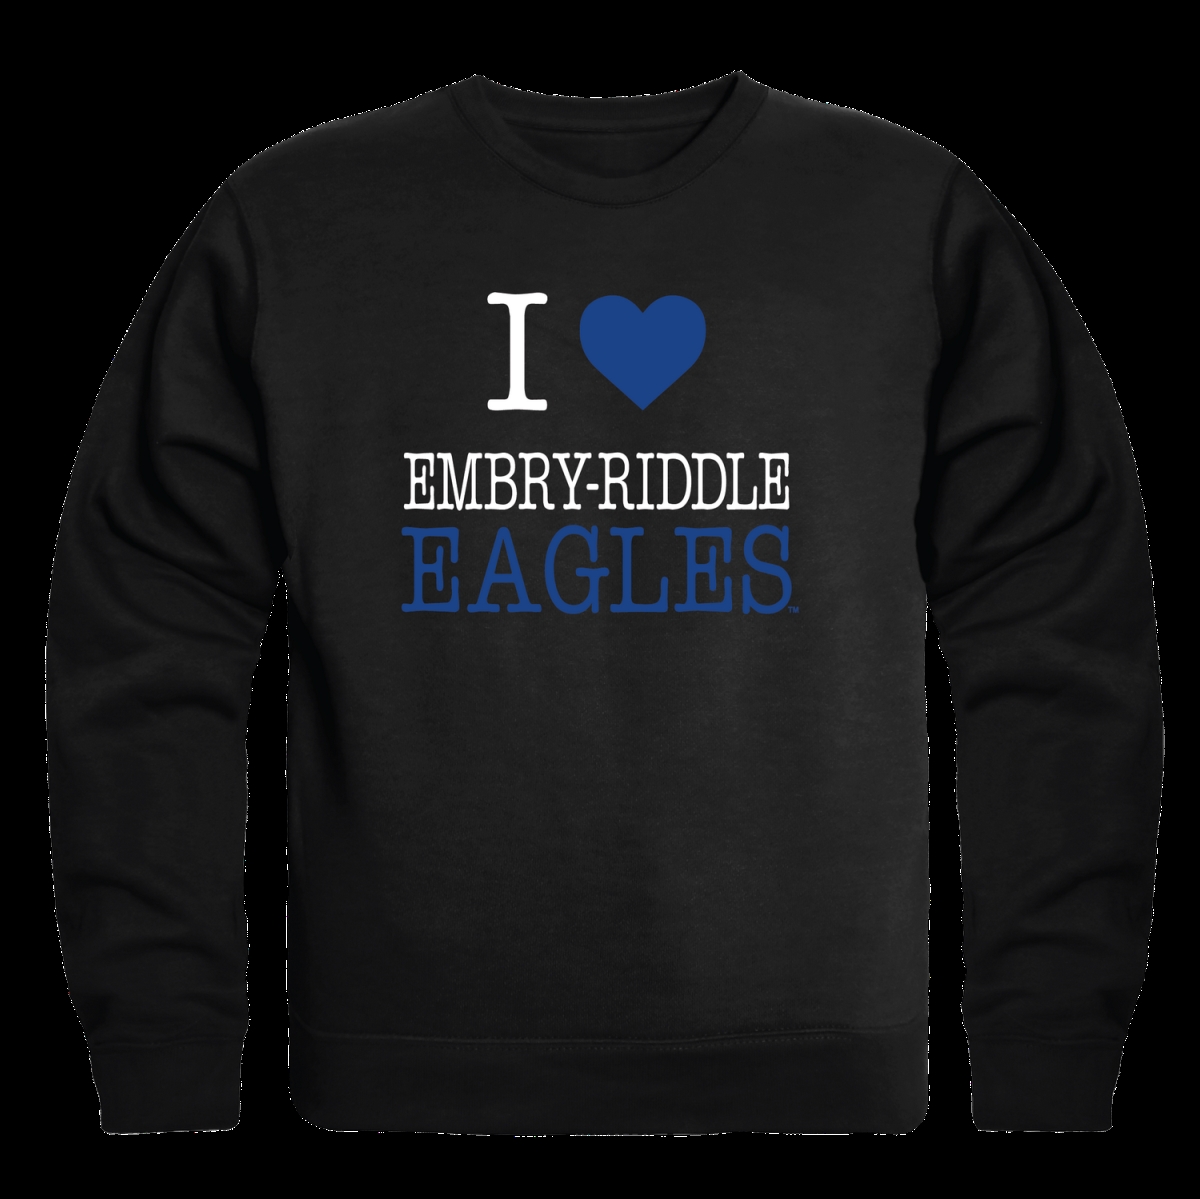 W Republic 552-298-BK2-04 Embry-Riddle Aeronautical University Eagles I Love Crewneck Sweatshirt&#44; Black - Extra Large